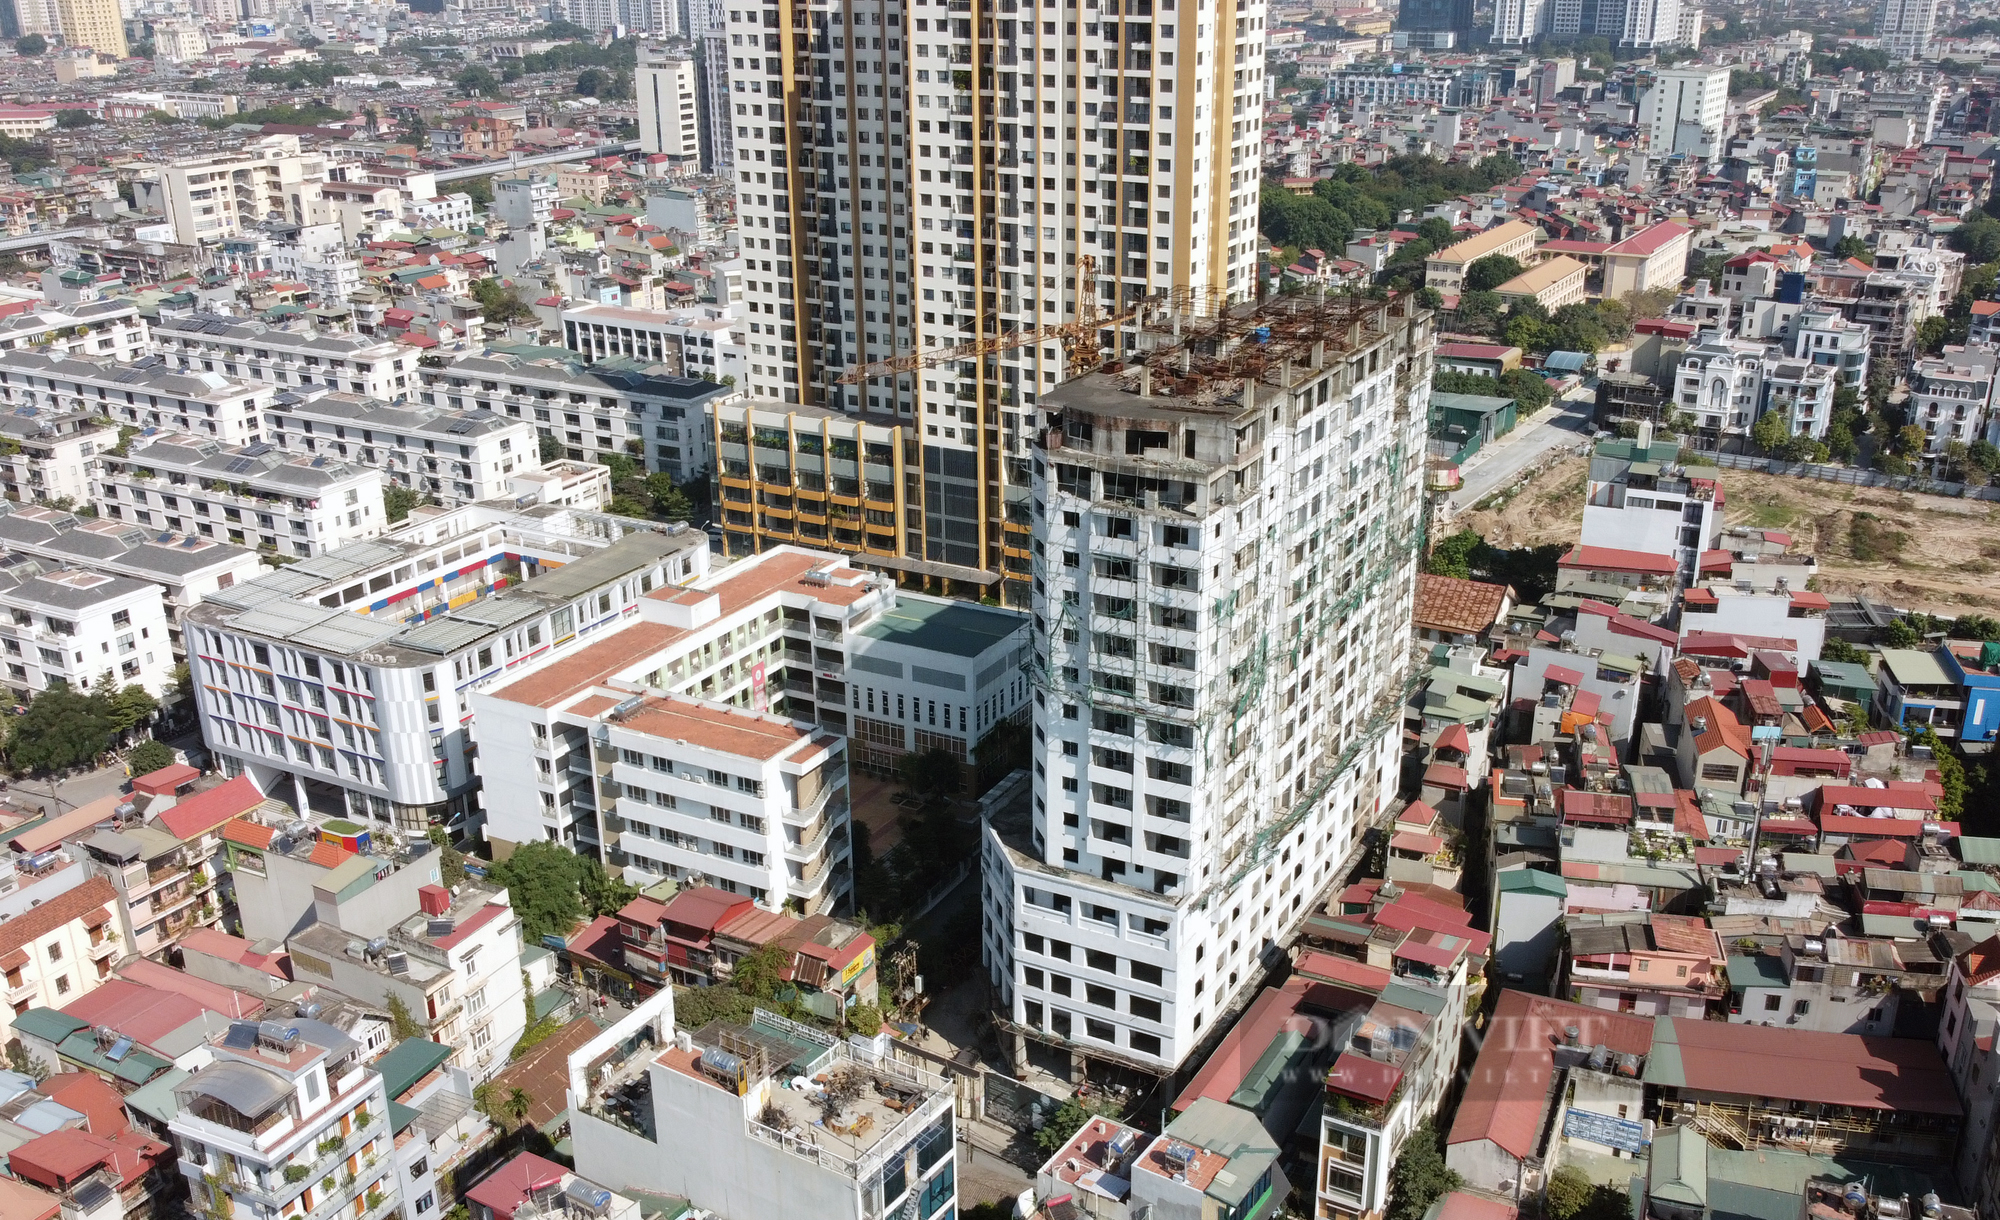 Cận cảnh dự án cao ốc 16 tầng bỏ hoang khiến người dân sống bất an giữa lòng Hà Nội - Ảnh 2.